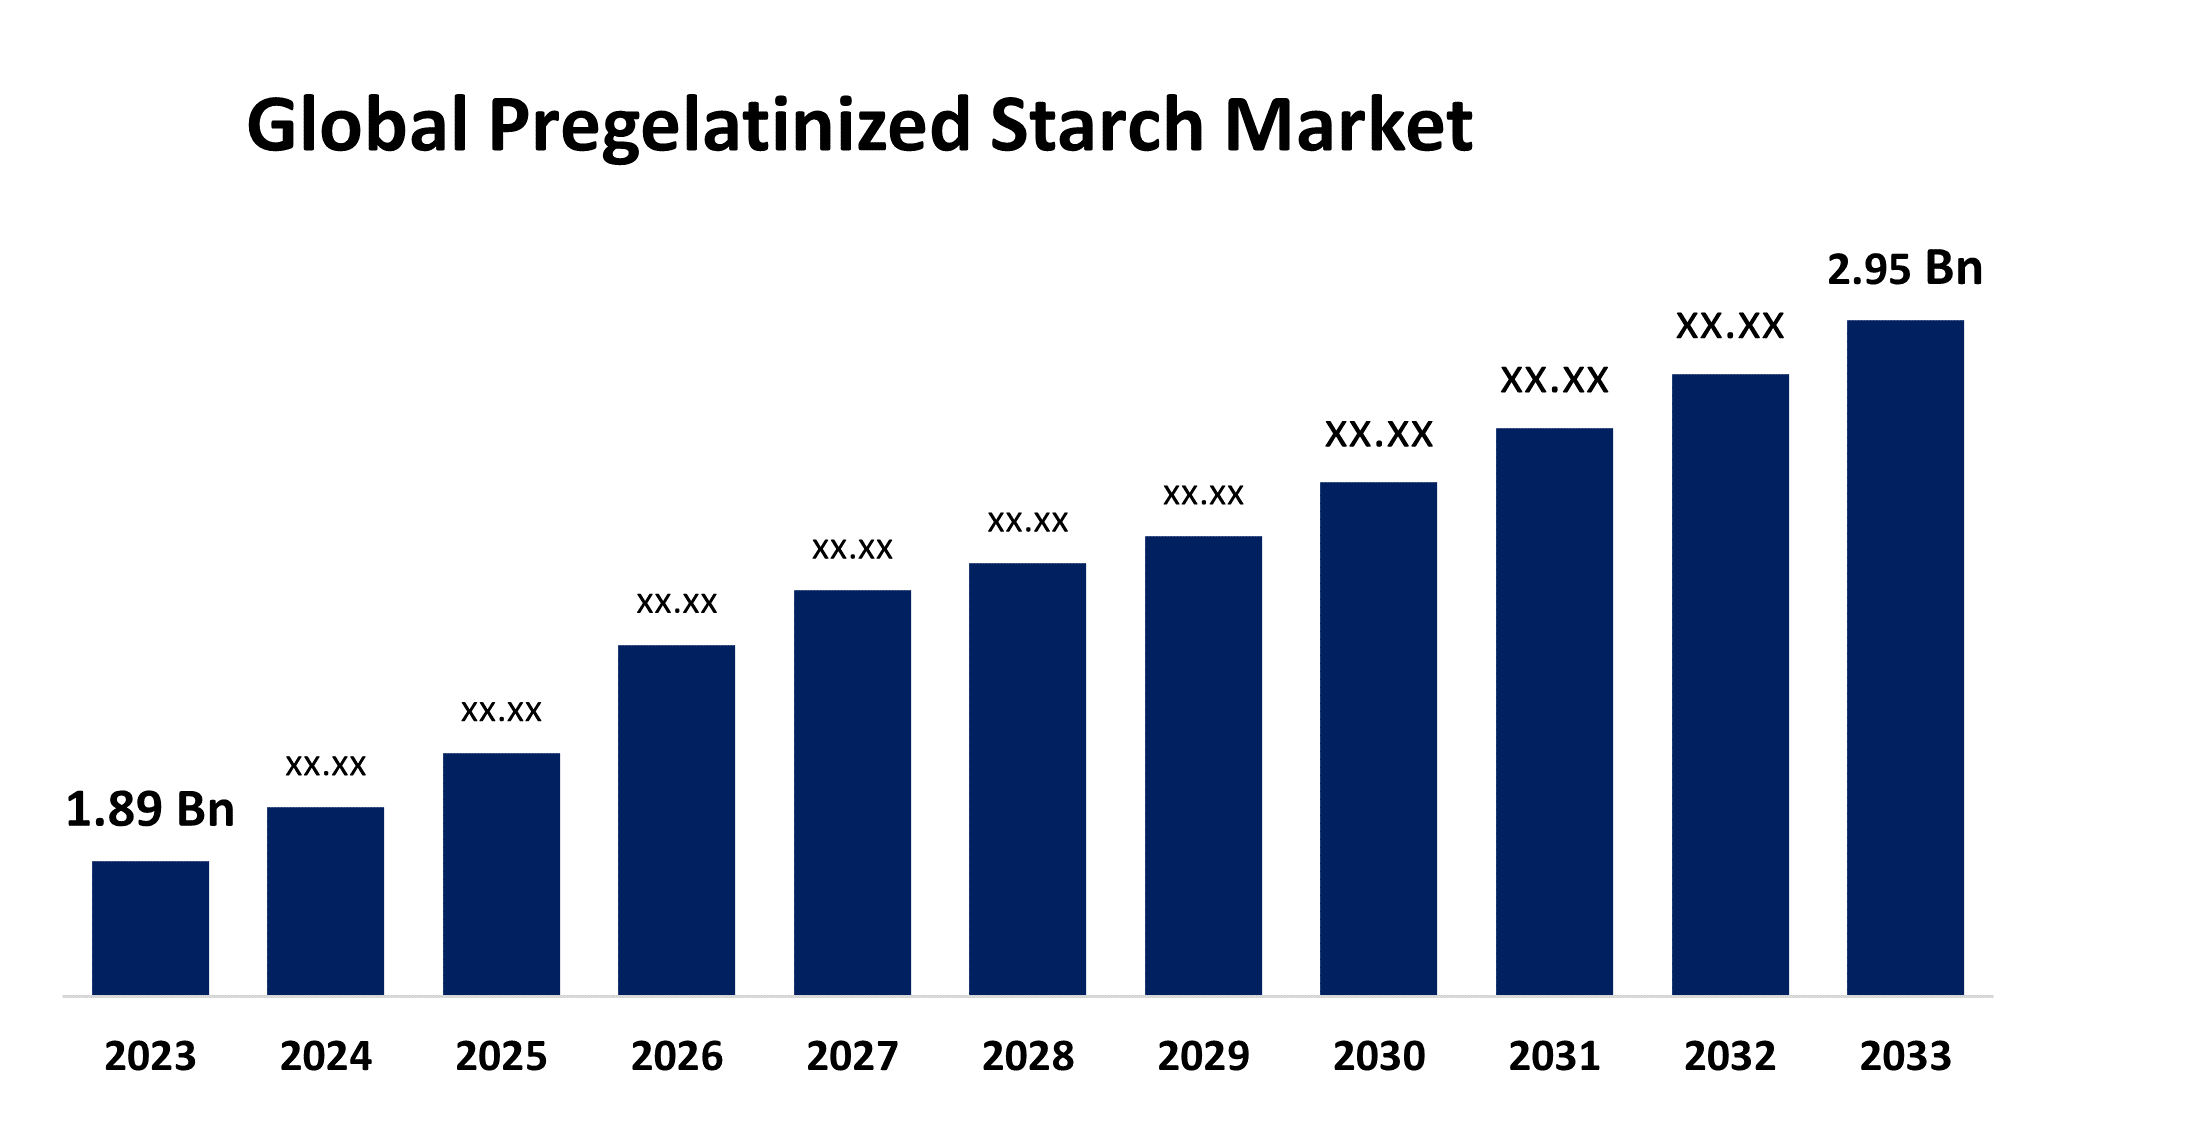 Global Pregelatinized Starch Market